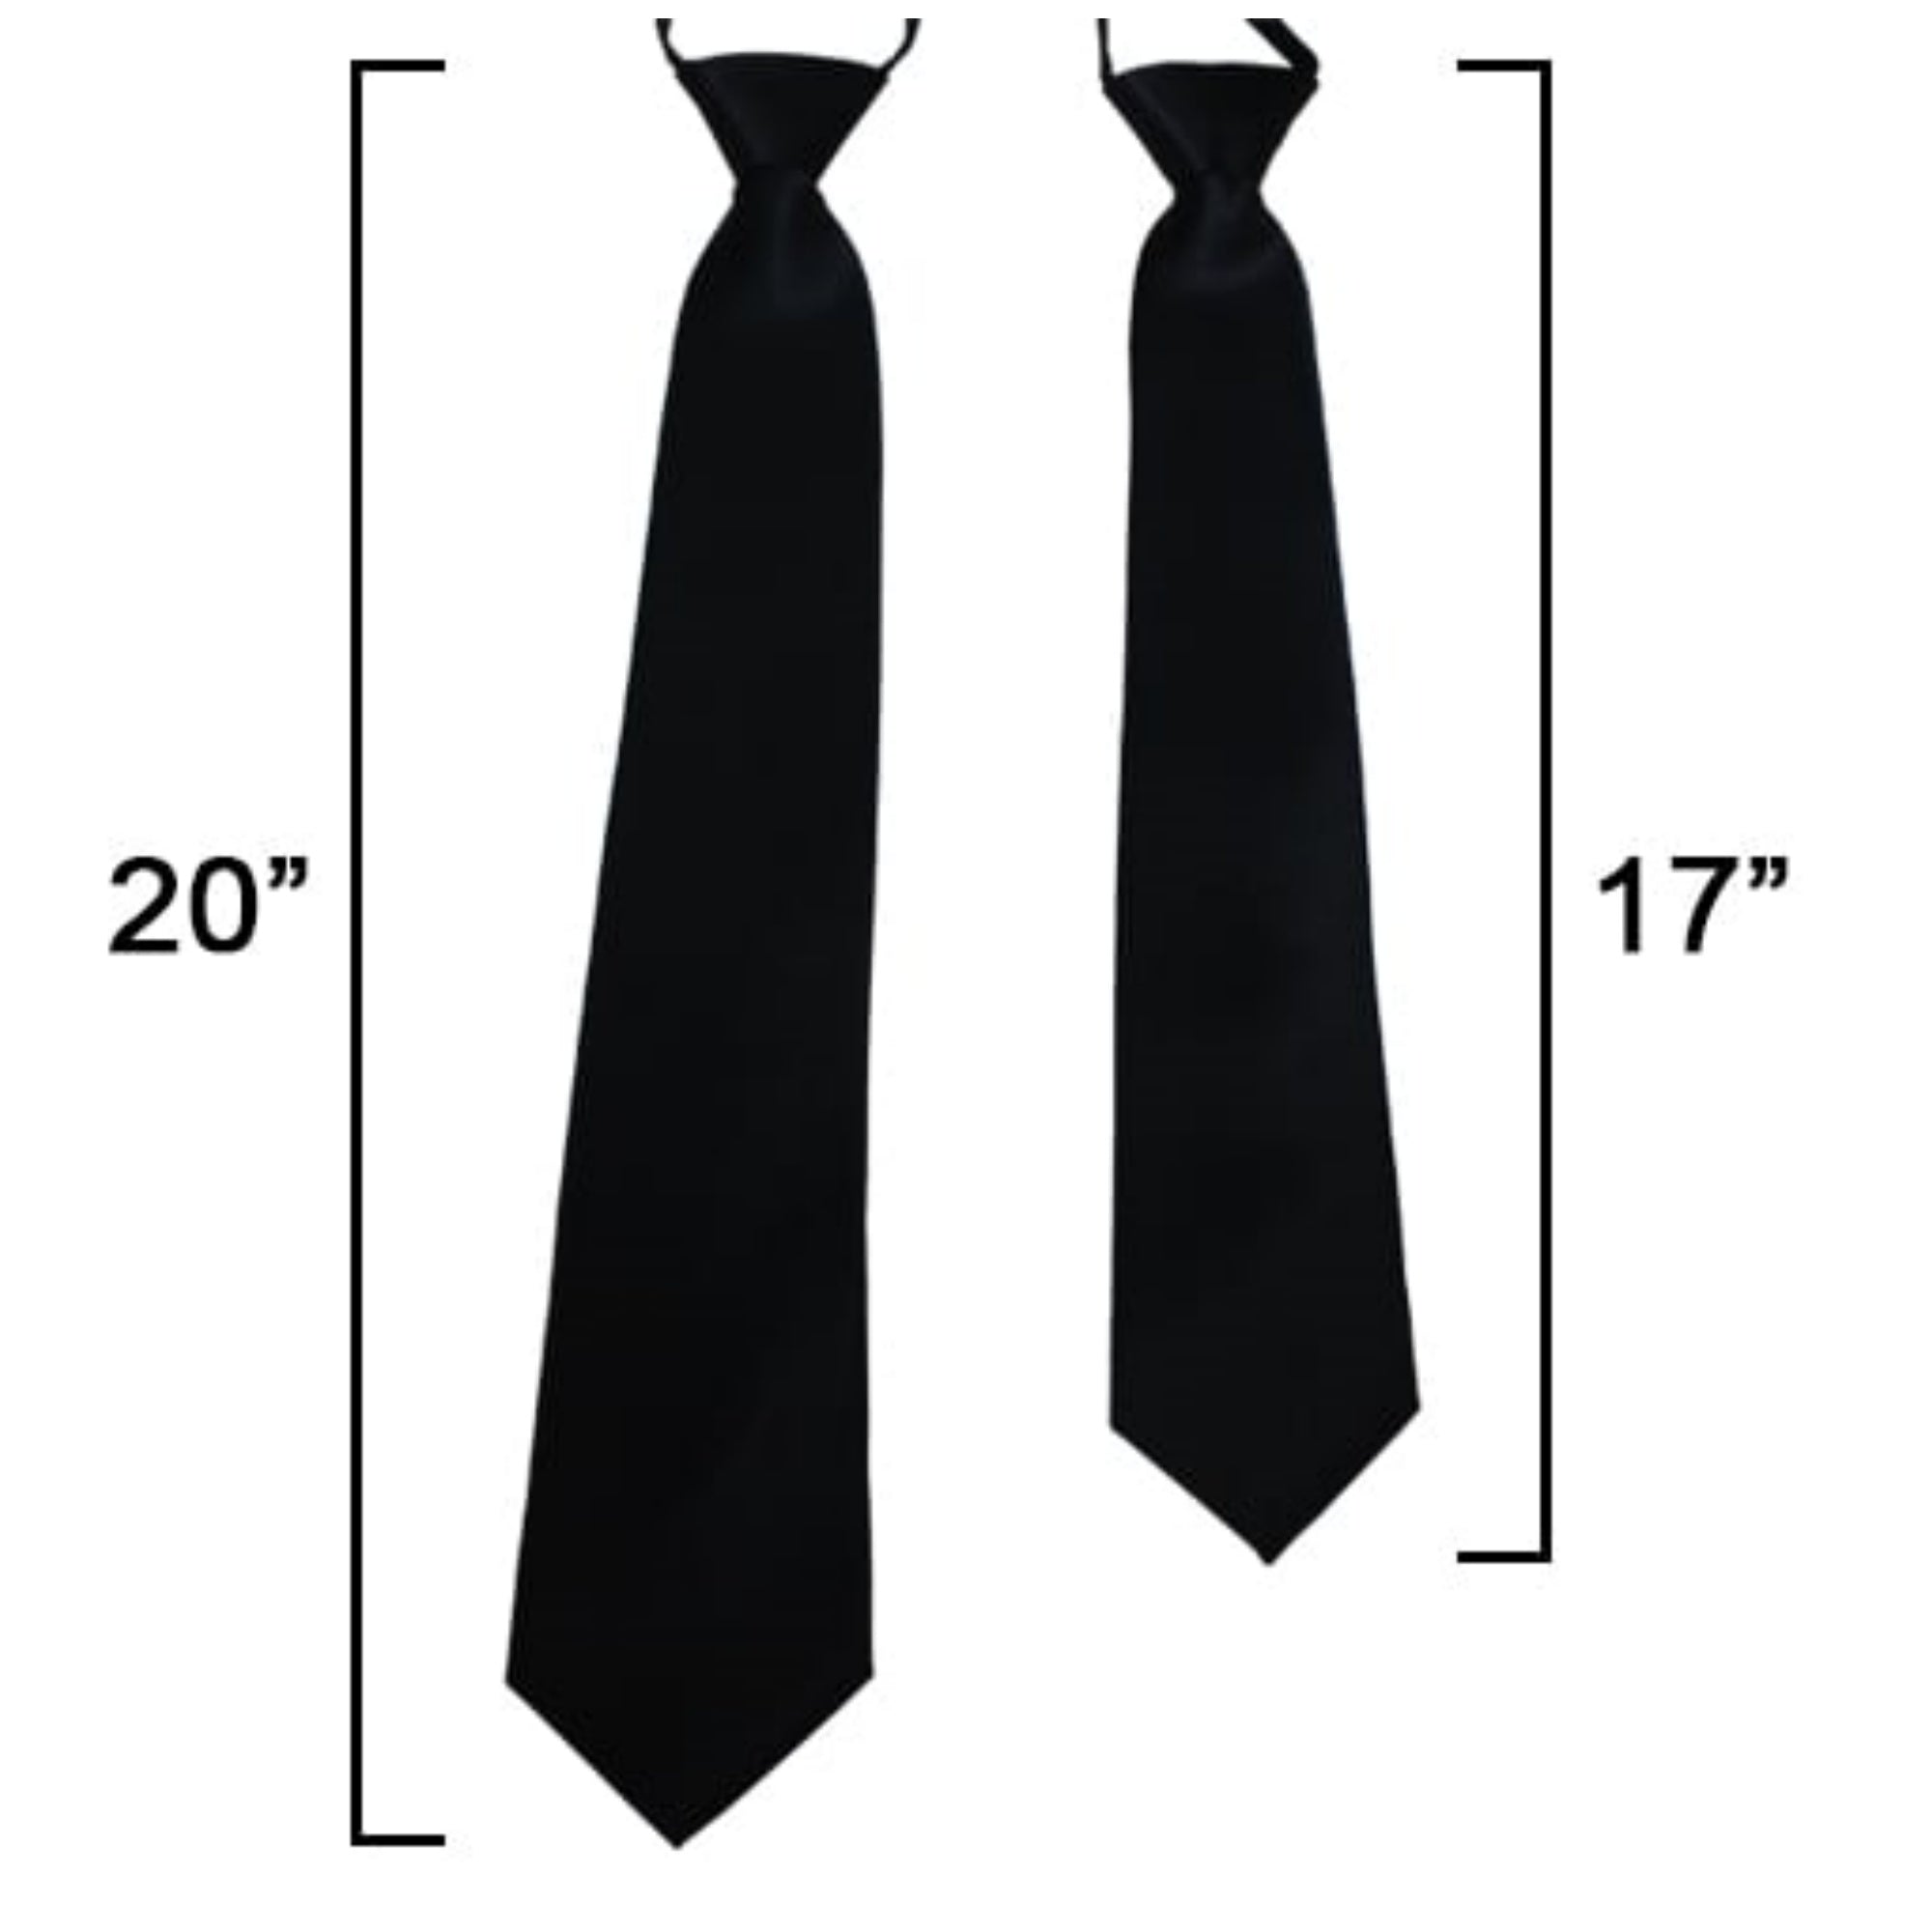 TheDapperTie Men's Solid Color Zipper Neckties 17 Inch Or 20 Inch Dapper Neckwear TheDapperTie   